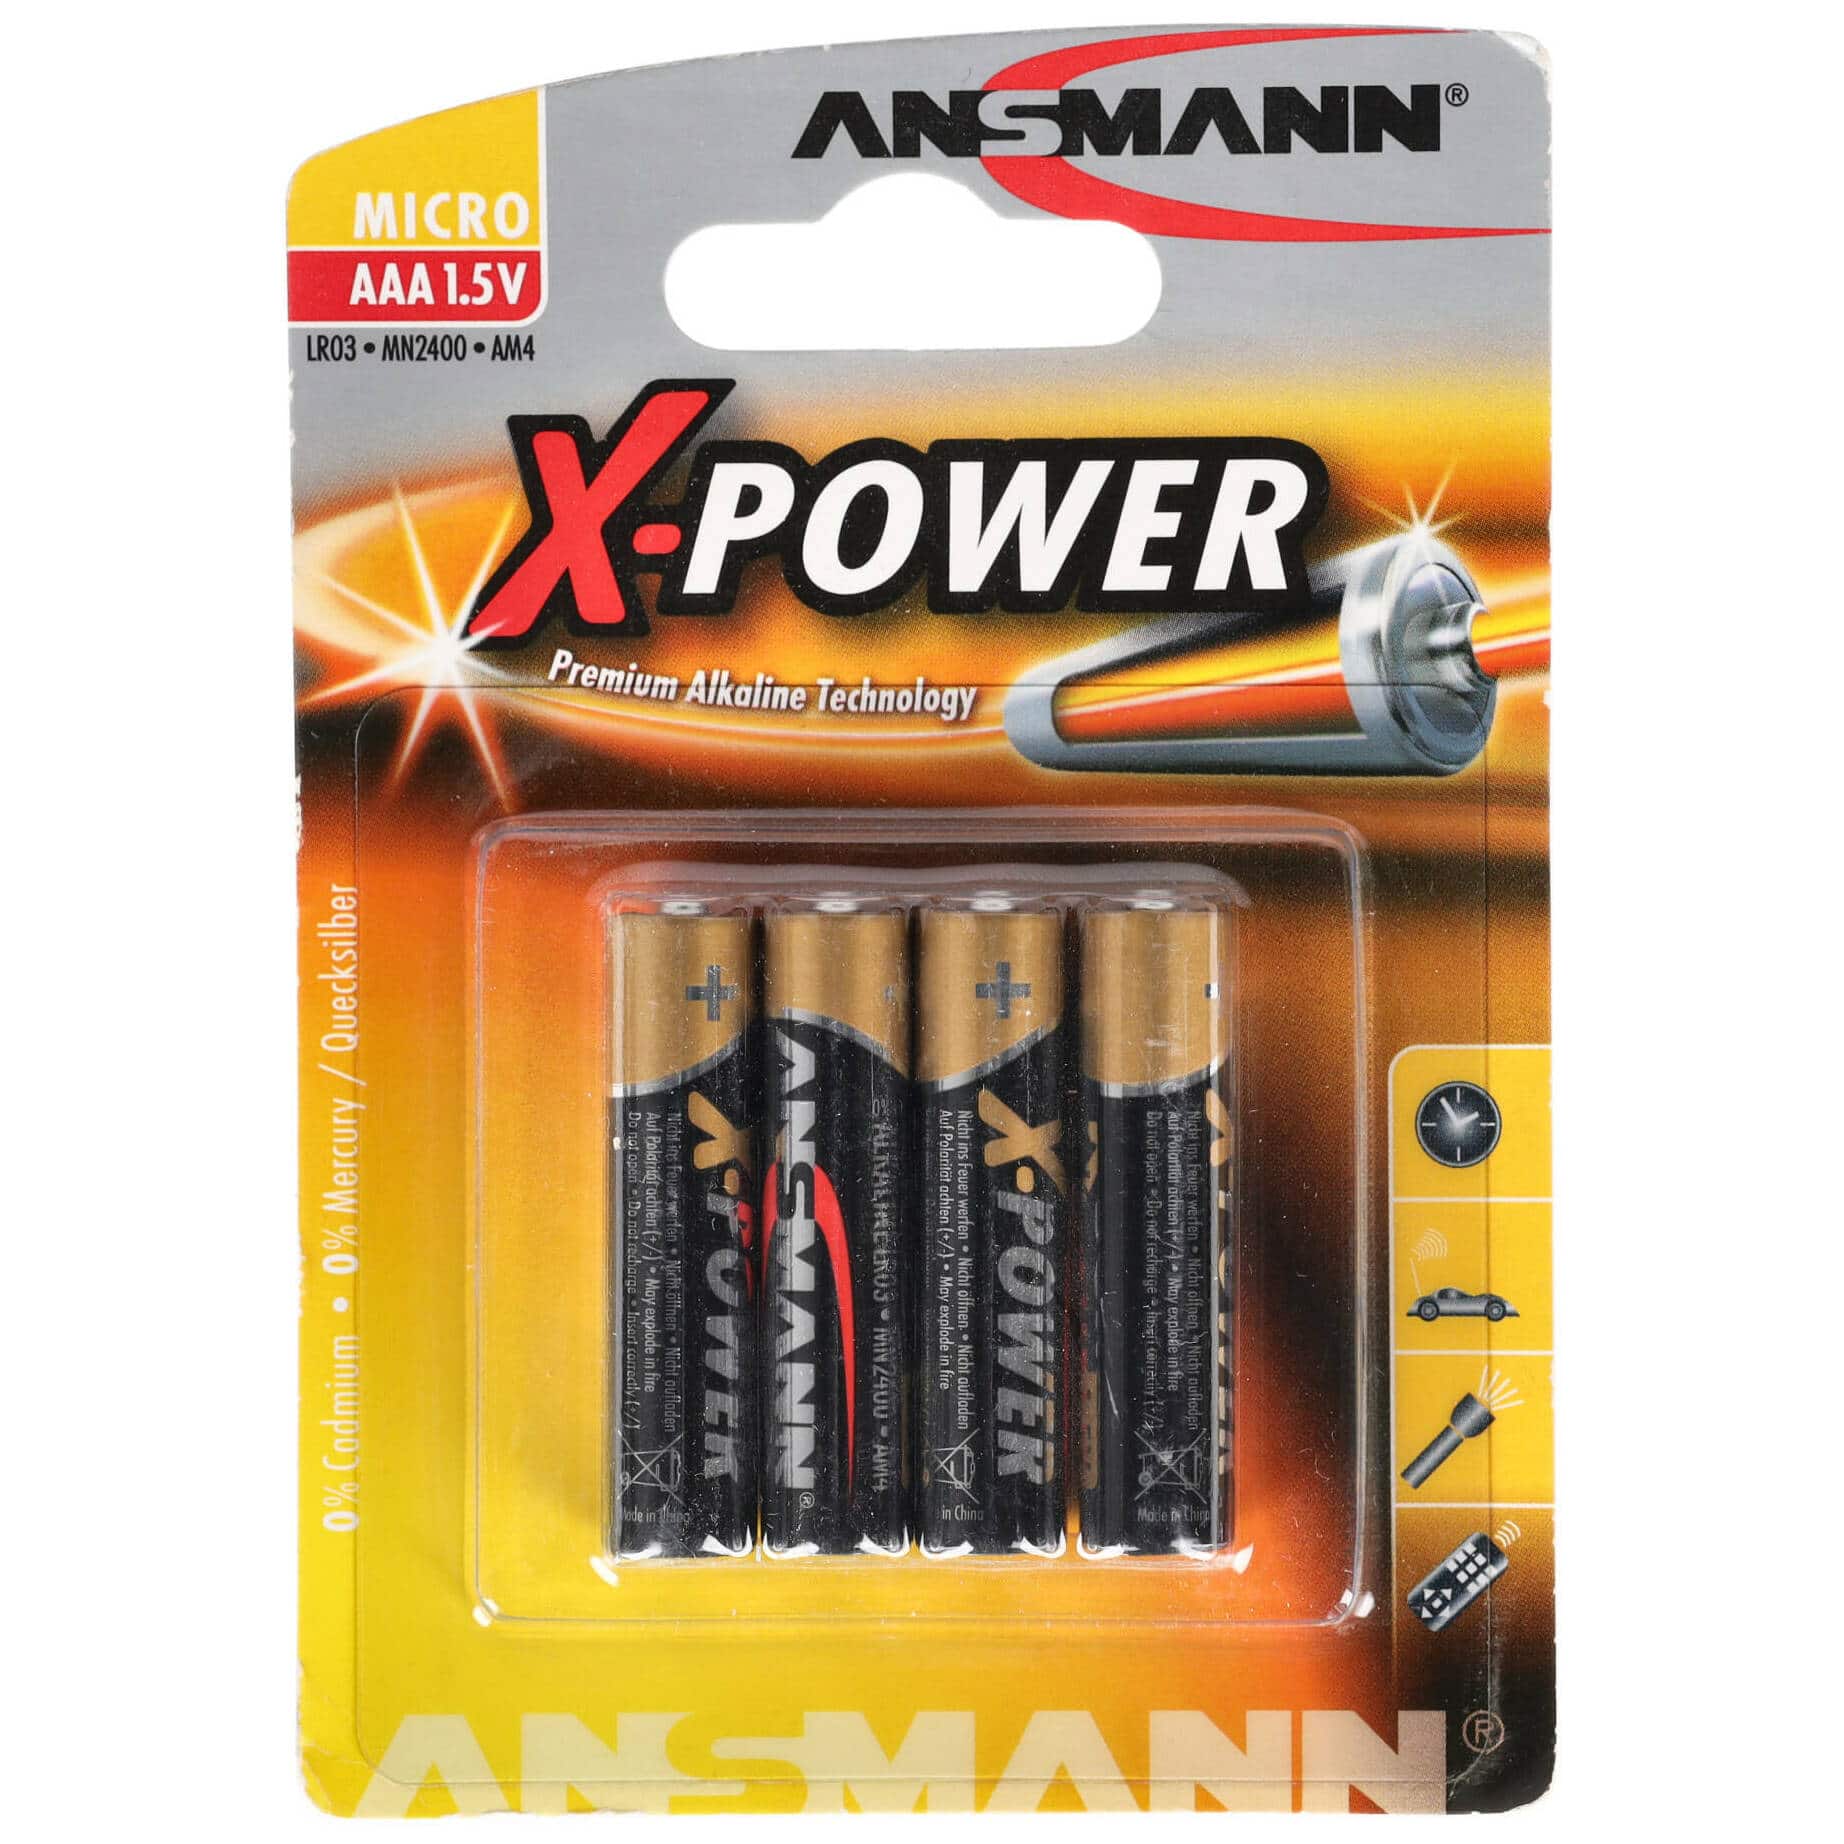 Ansmann X-Power Micro AAA 1,5V Alkalinebatterie 4er Blister